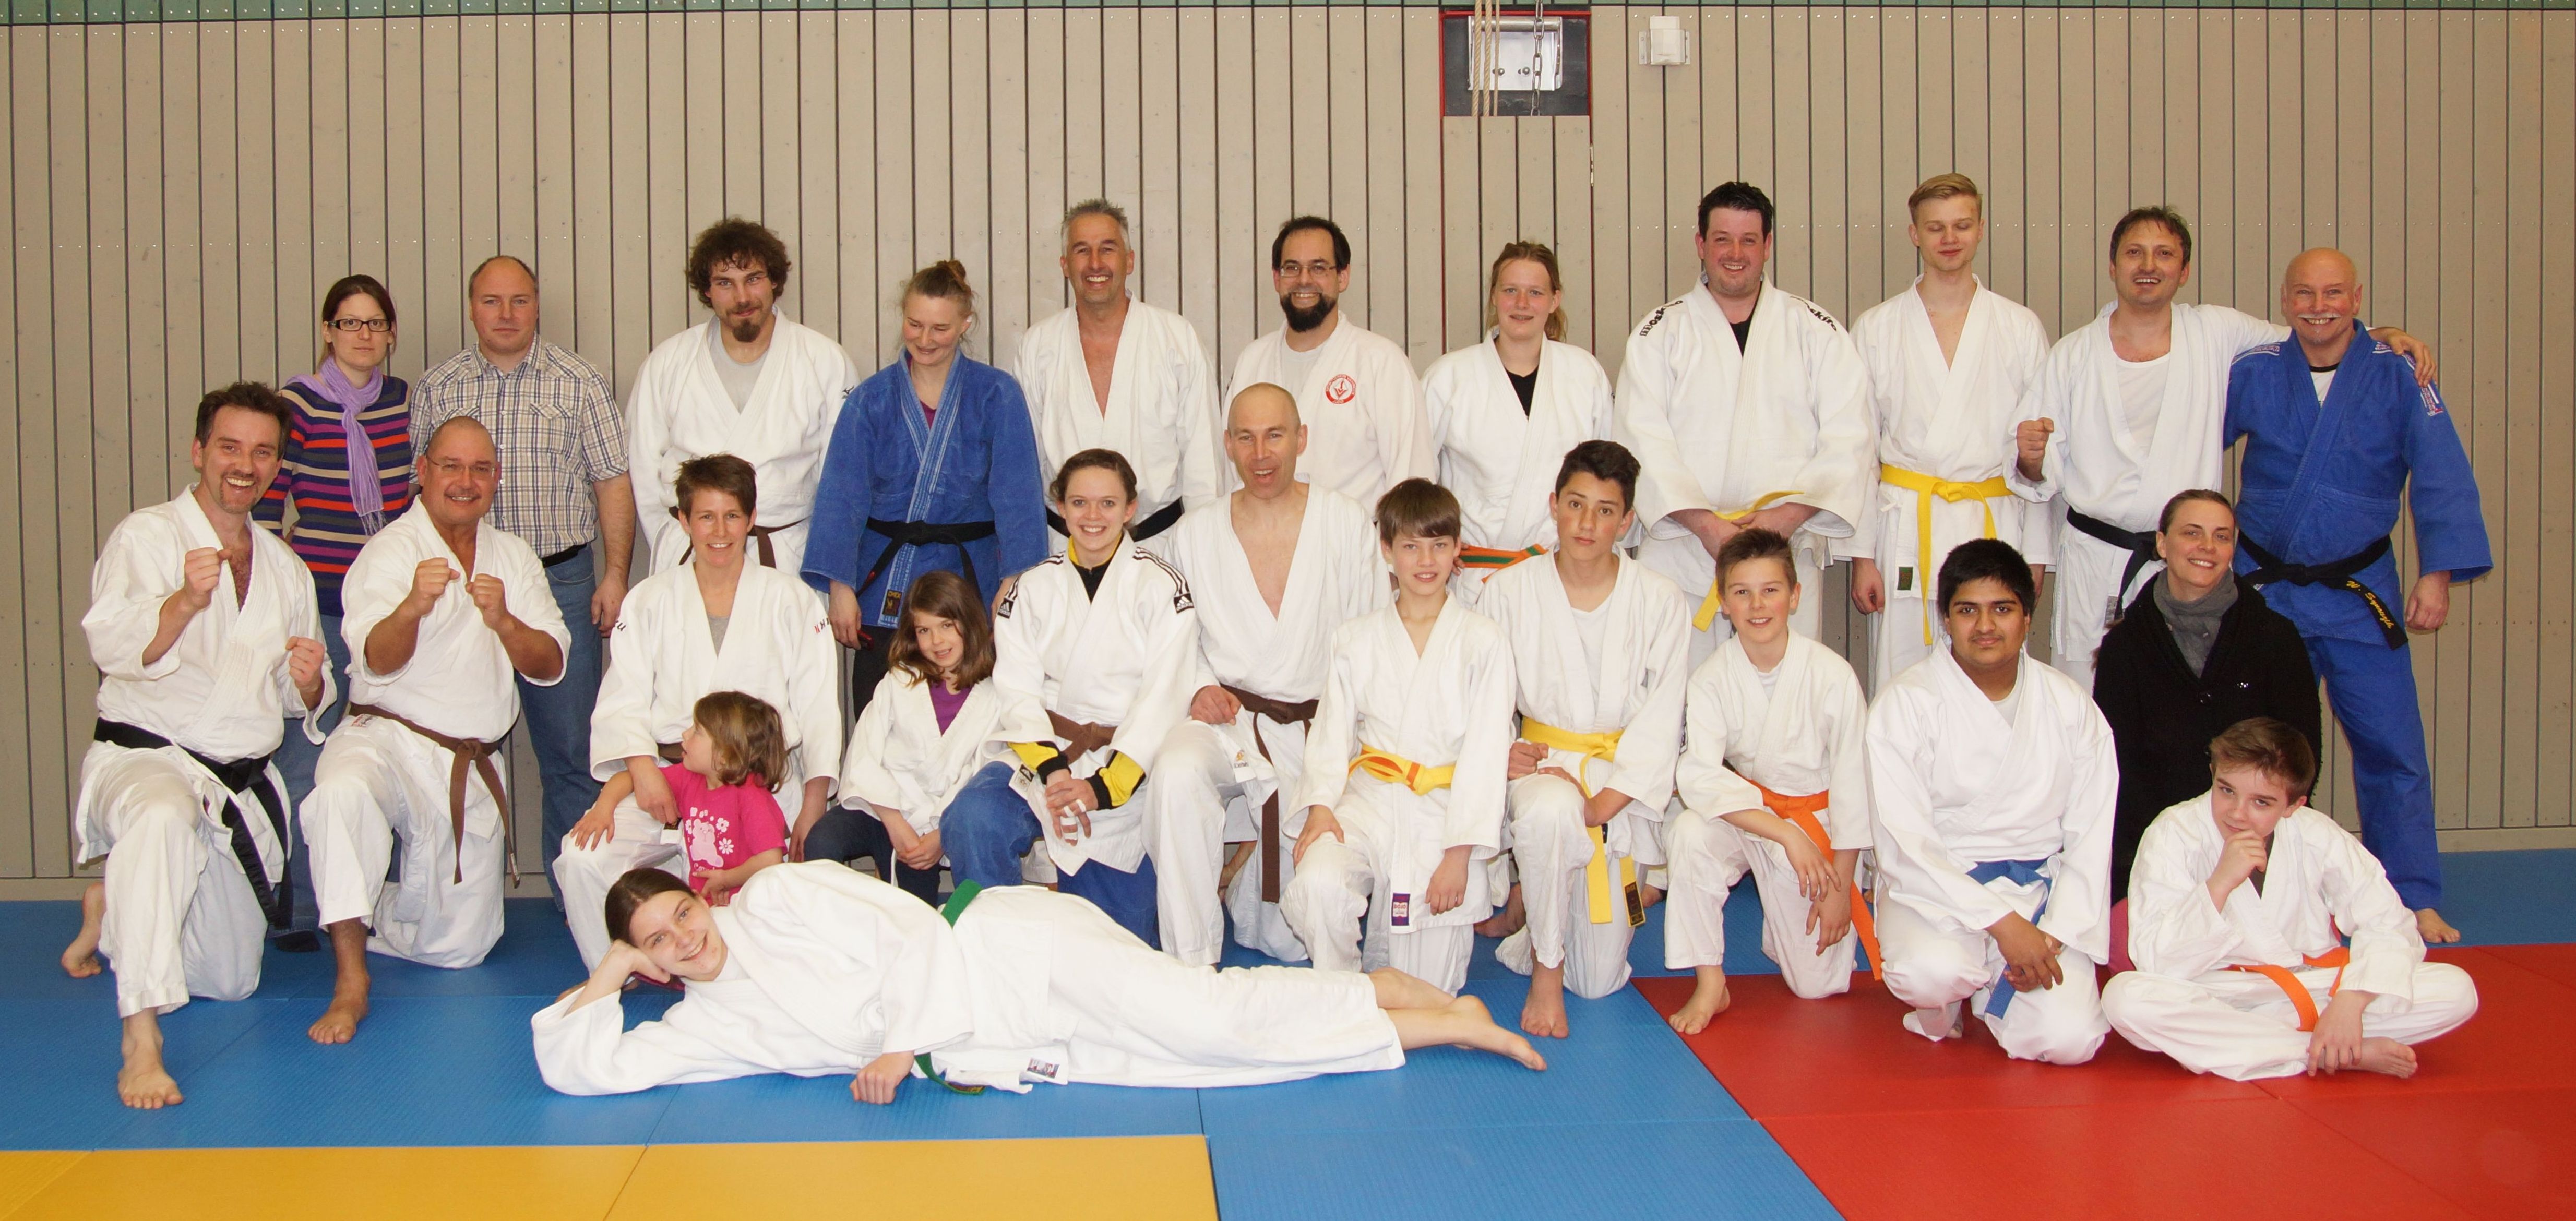 Glückliche Teilnehmer, schöner Samstag. Die Teilnehmer des zweiten Judo/Karate Meetings